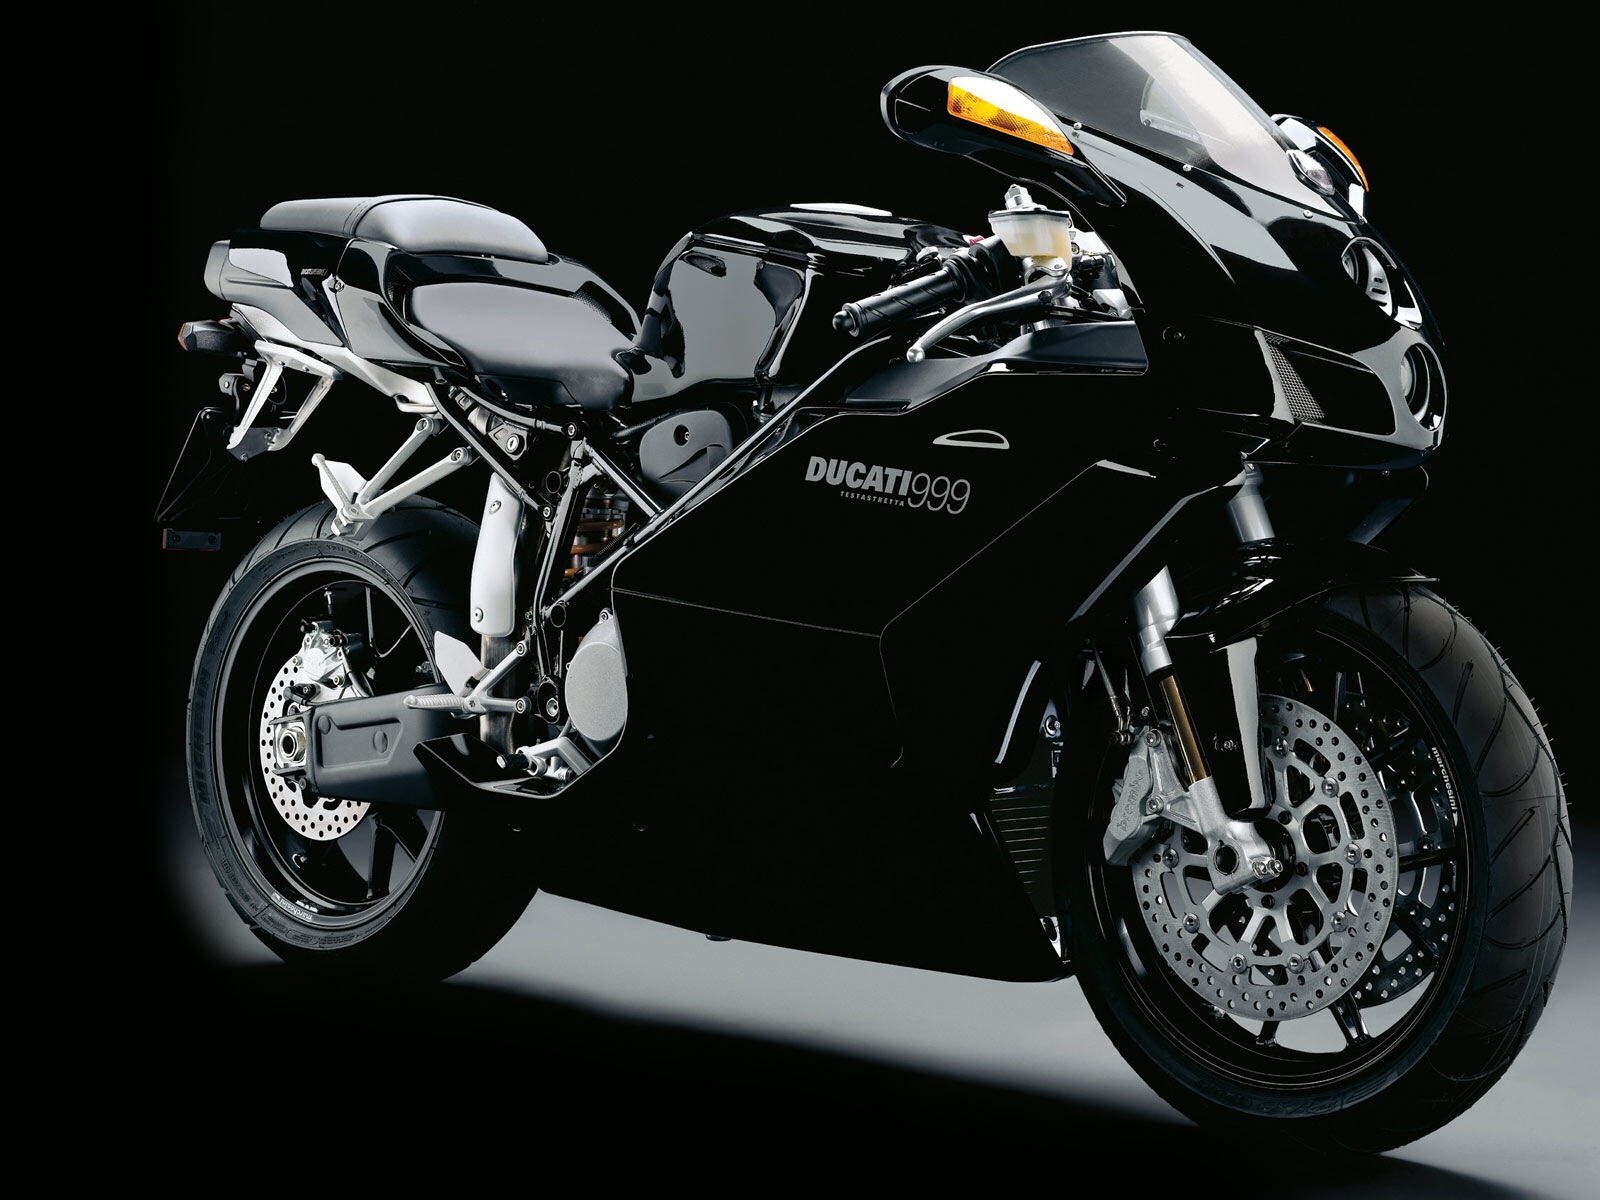 Ducati 999 Testastretta Wallpapers 1600x1200 380552